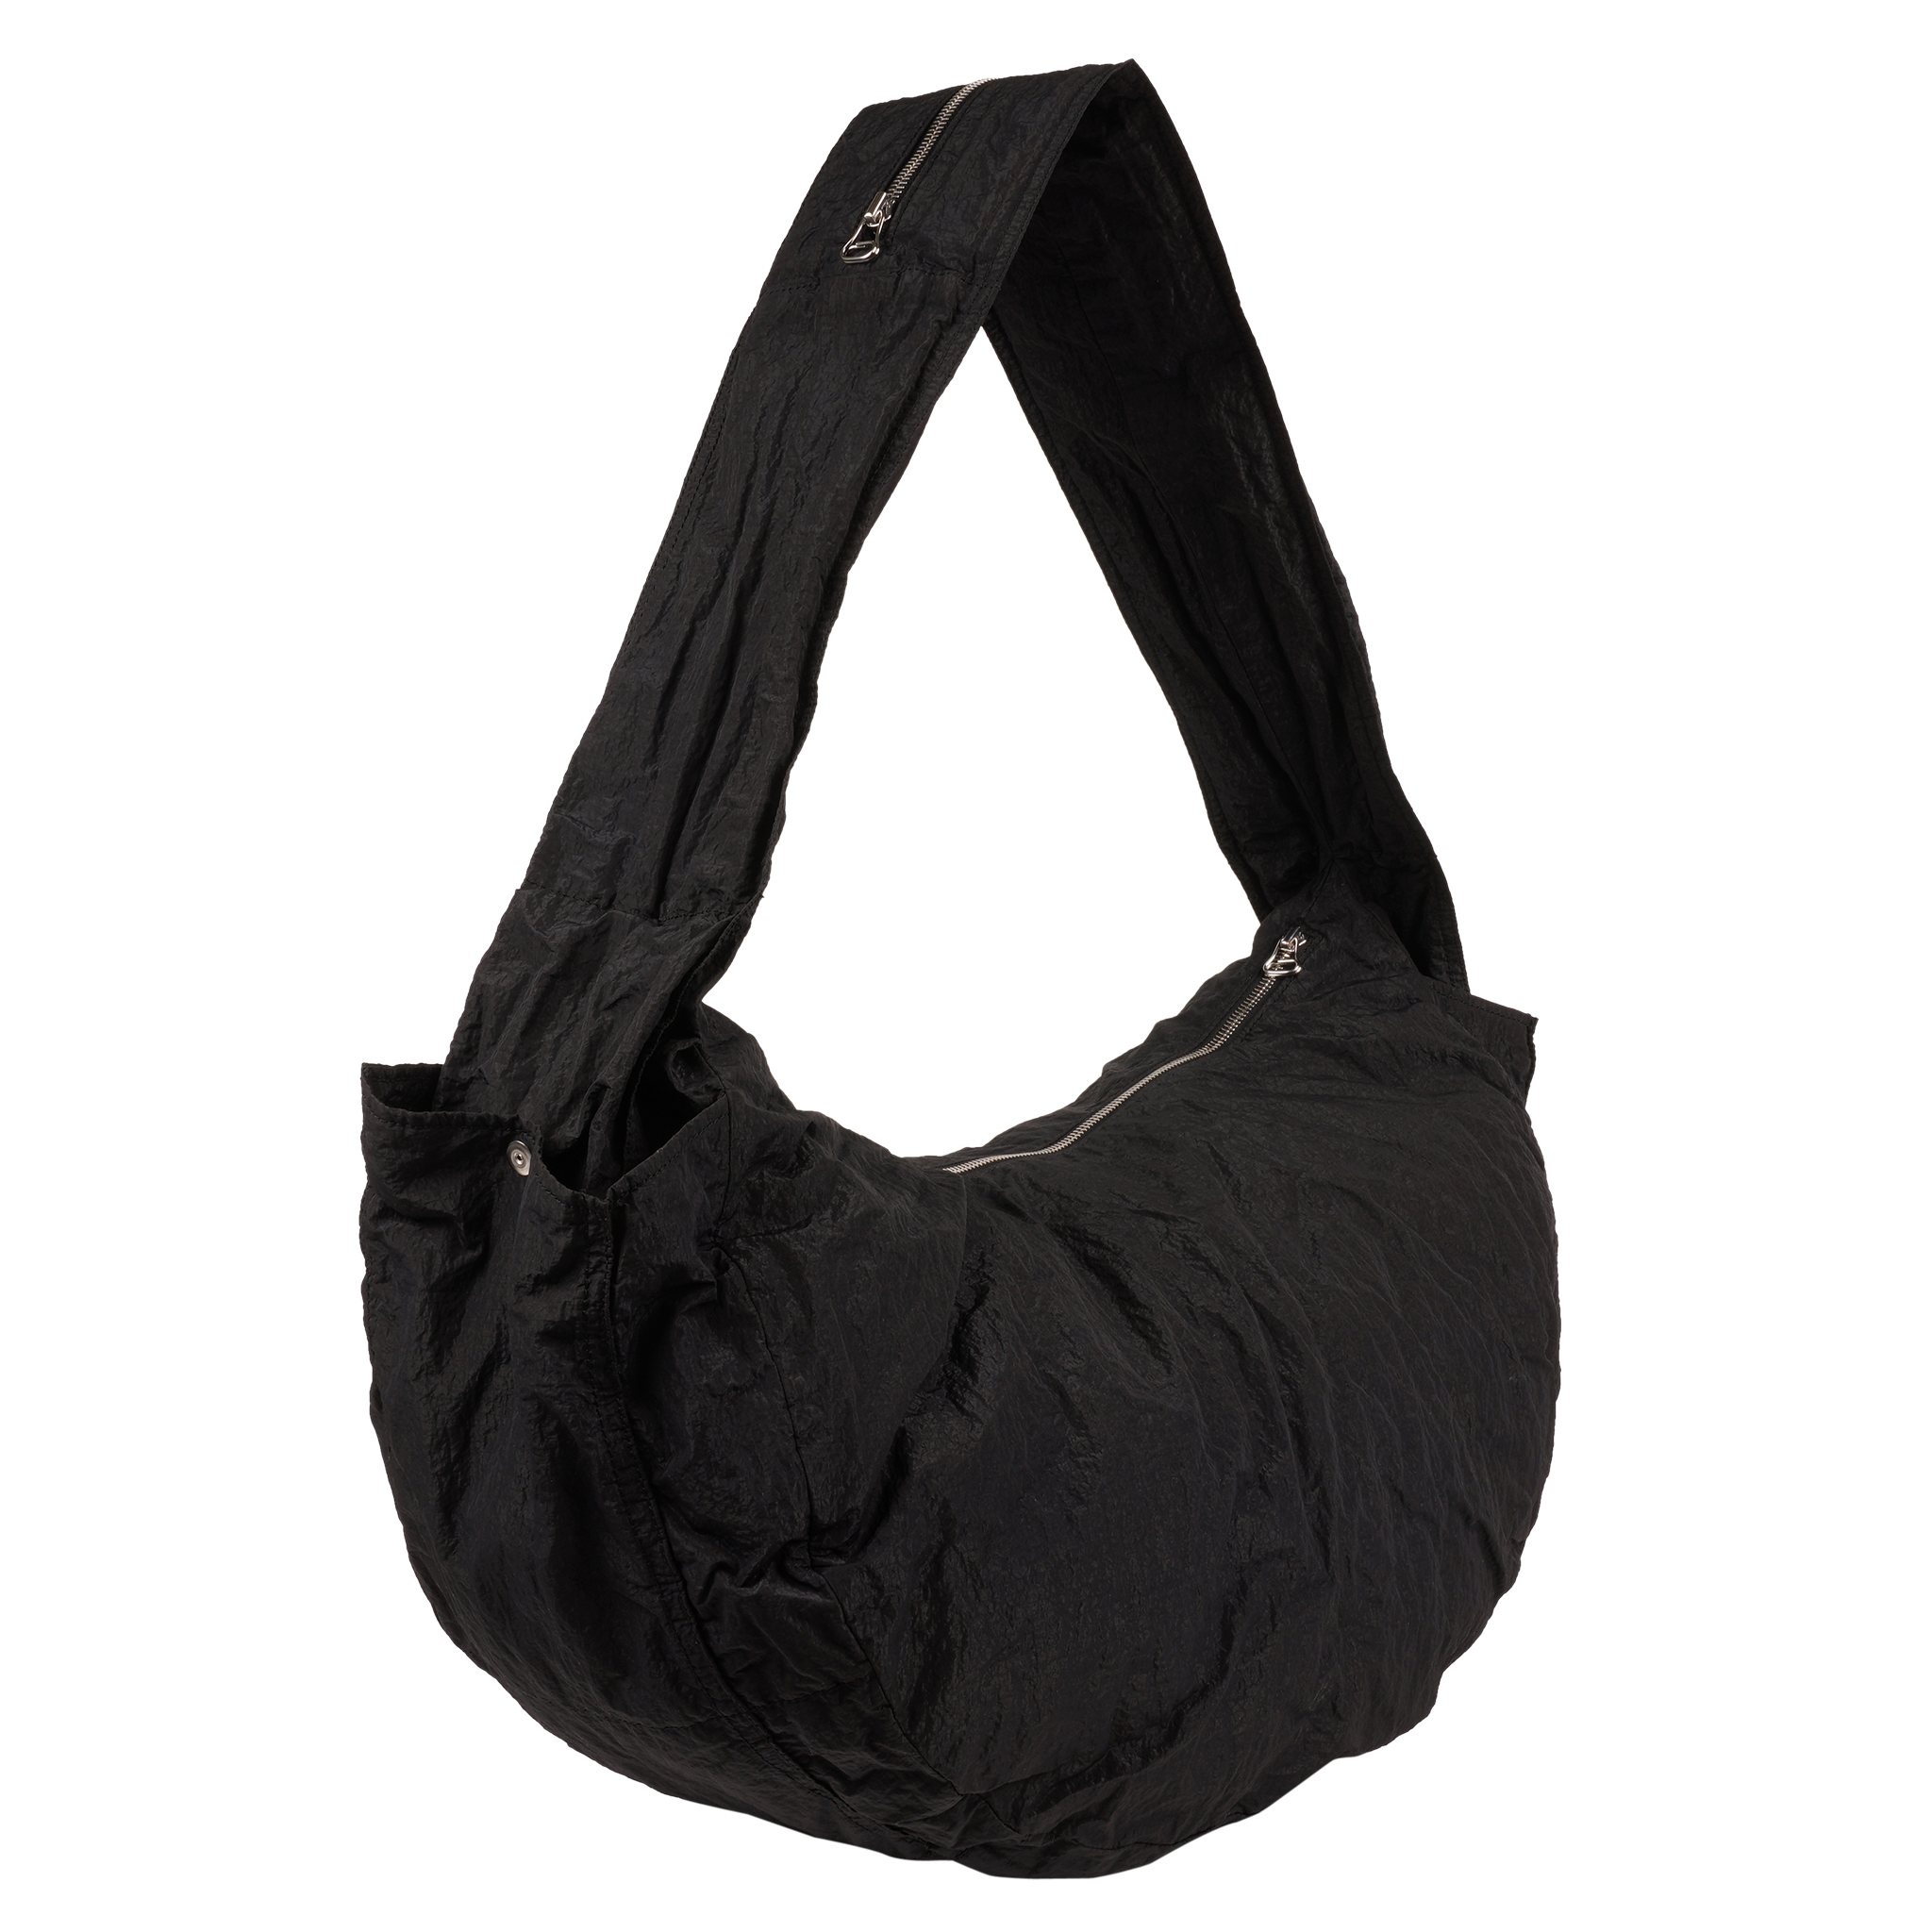 Omar Afridi Lidia Bag BLACK COTTON | hartwellspremium.com